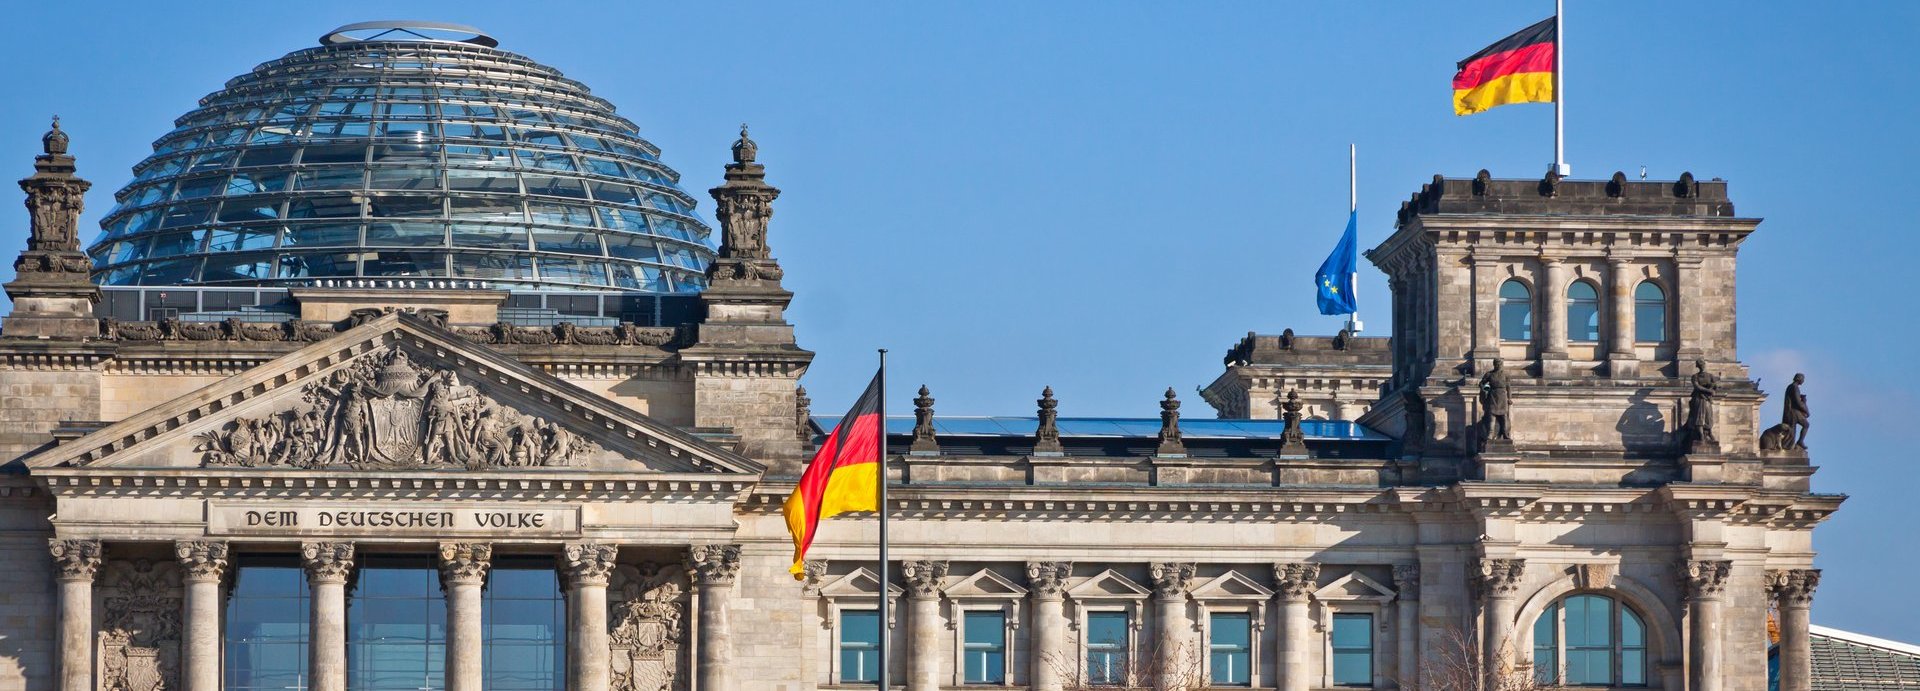 Bundestag mit deutscher Flagge und blauem wolkenlosem Himmel